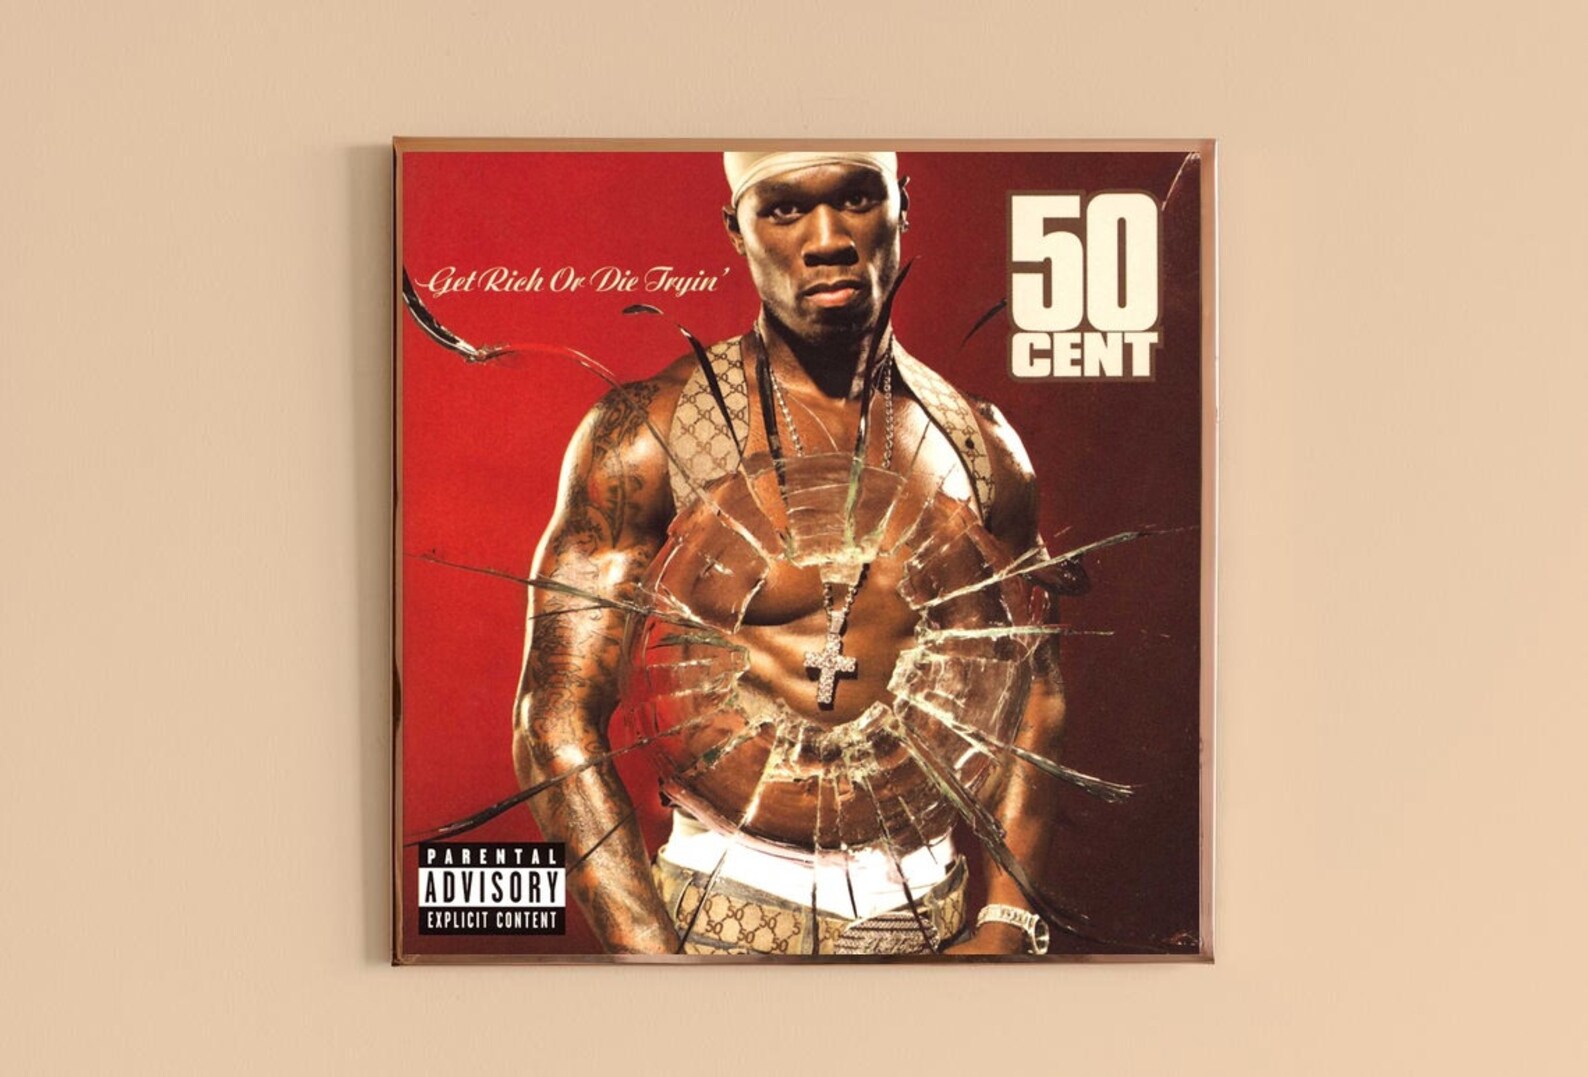 50 cent full album download